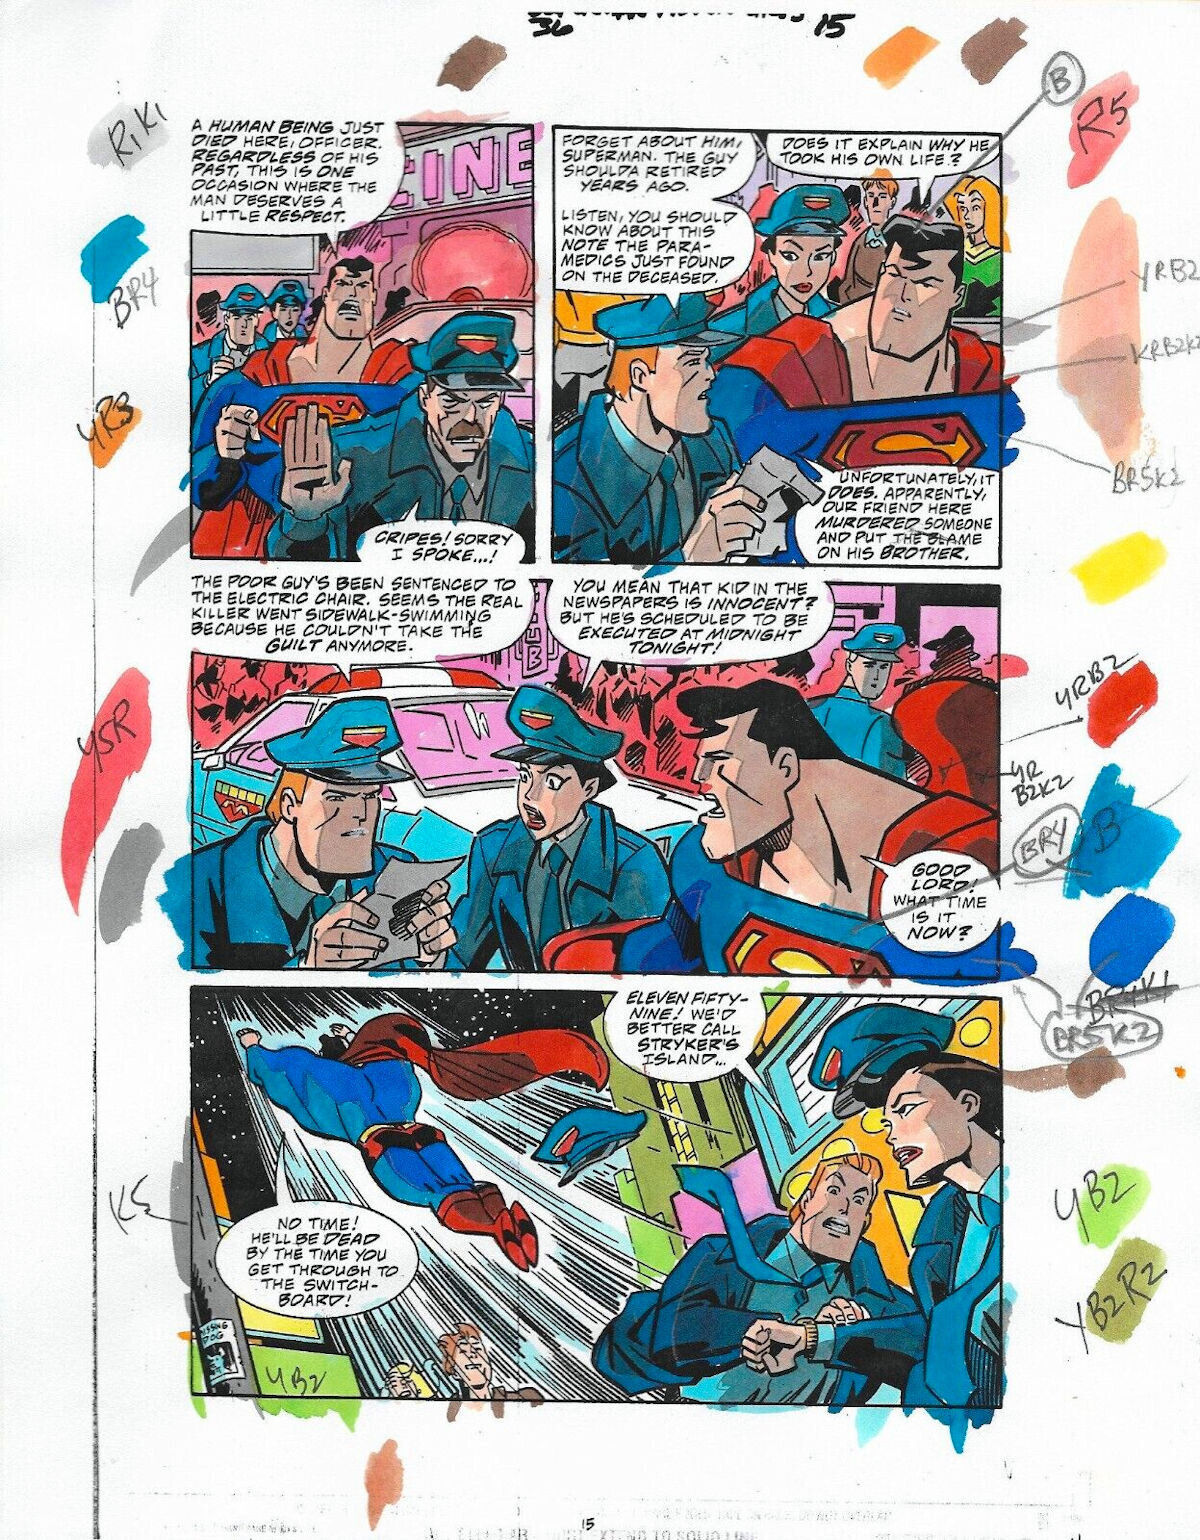 Original 1999 Superman Adventures 36 color guide art page 15, DC Comics action